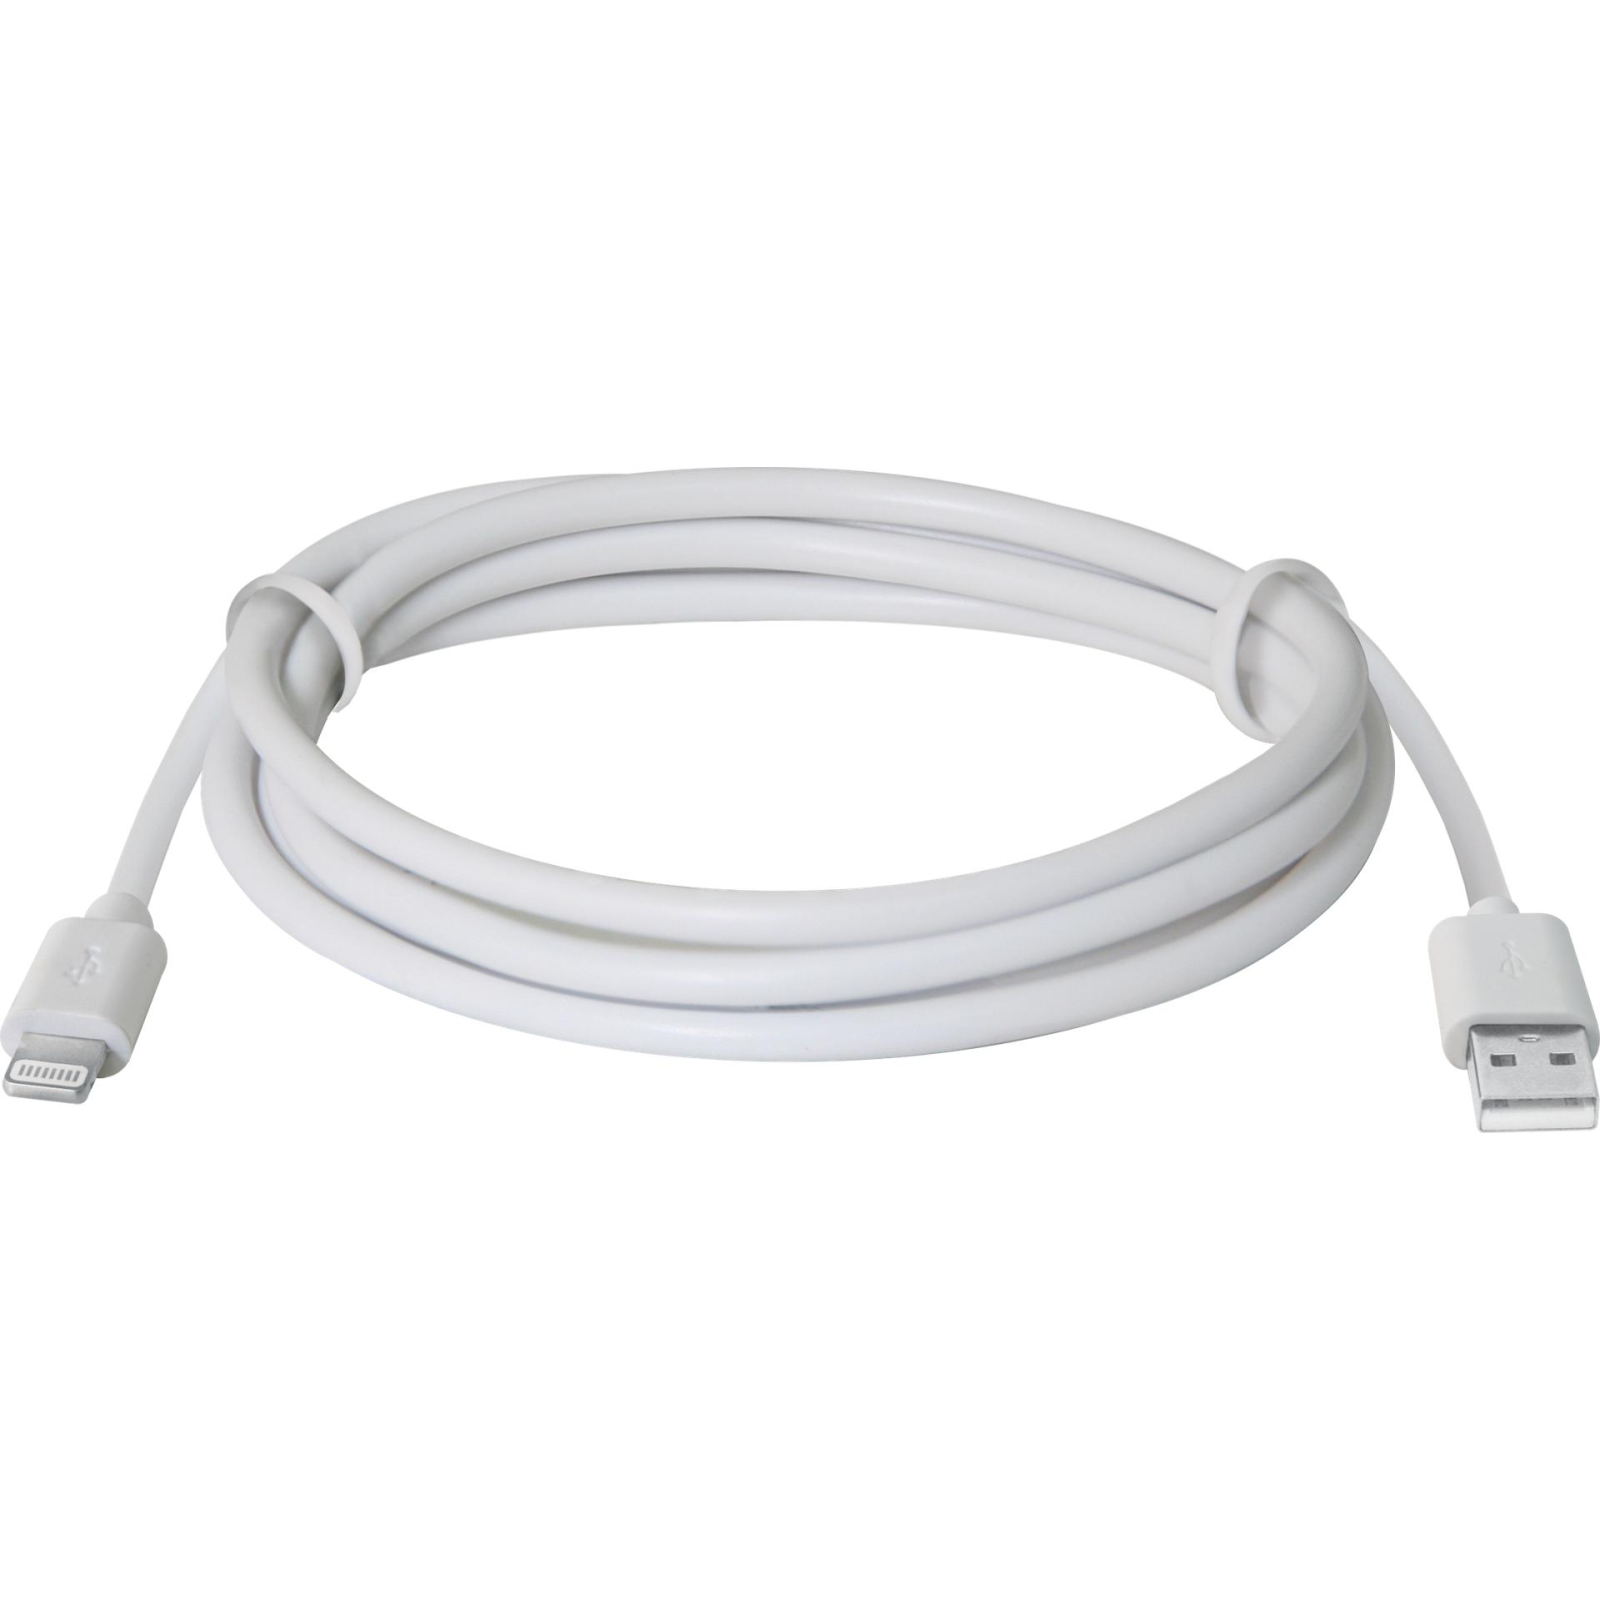 Дата кабель USB 2.0 AM to Lightning 1.0m ACH01-03BH white Defender (87479) зображення 2